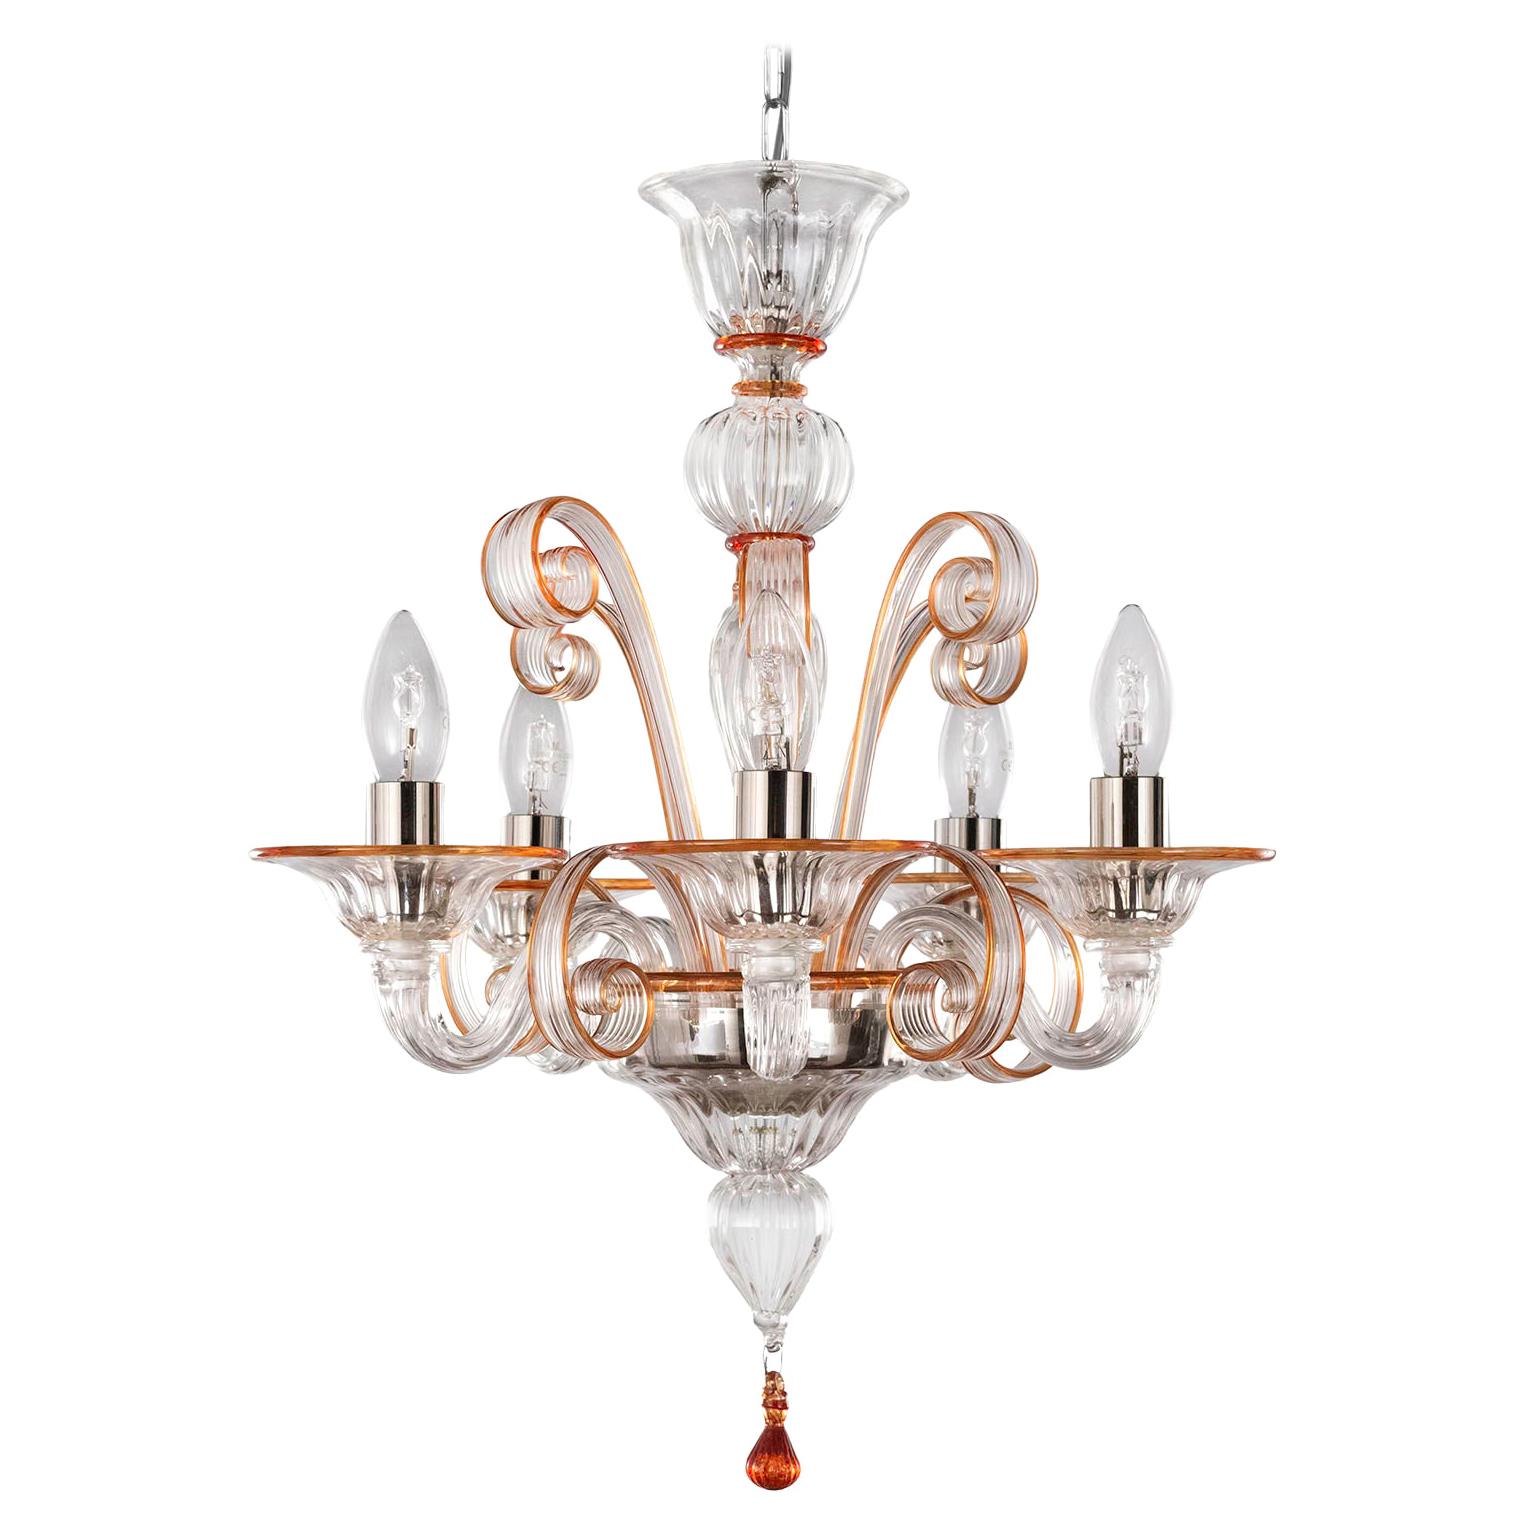 Kronleuchter mit 5 Armen aus klarem Muranoglas, orangefarbene Details von Multiforme